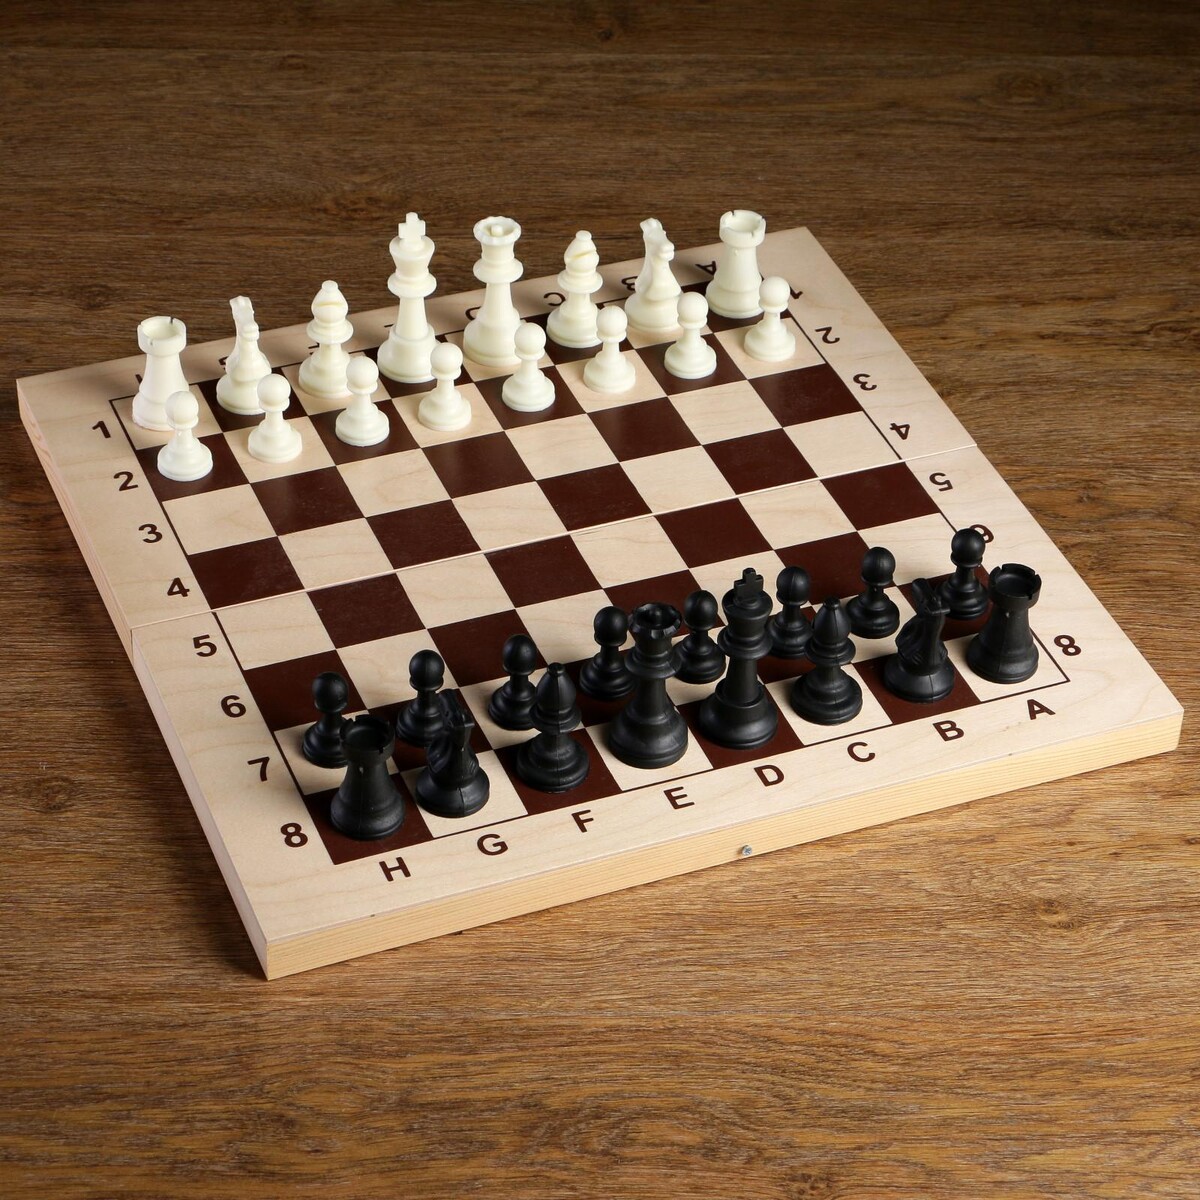 Шахматные фигуры, пластик, король h-9 см, пешка h-4.1 см титановый король